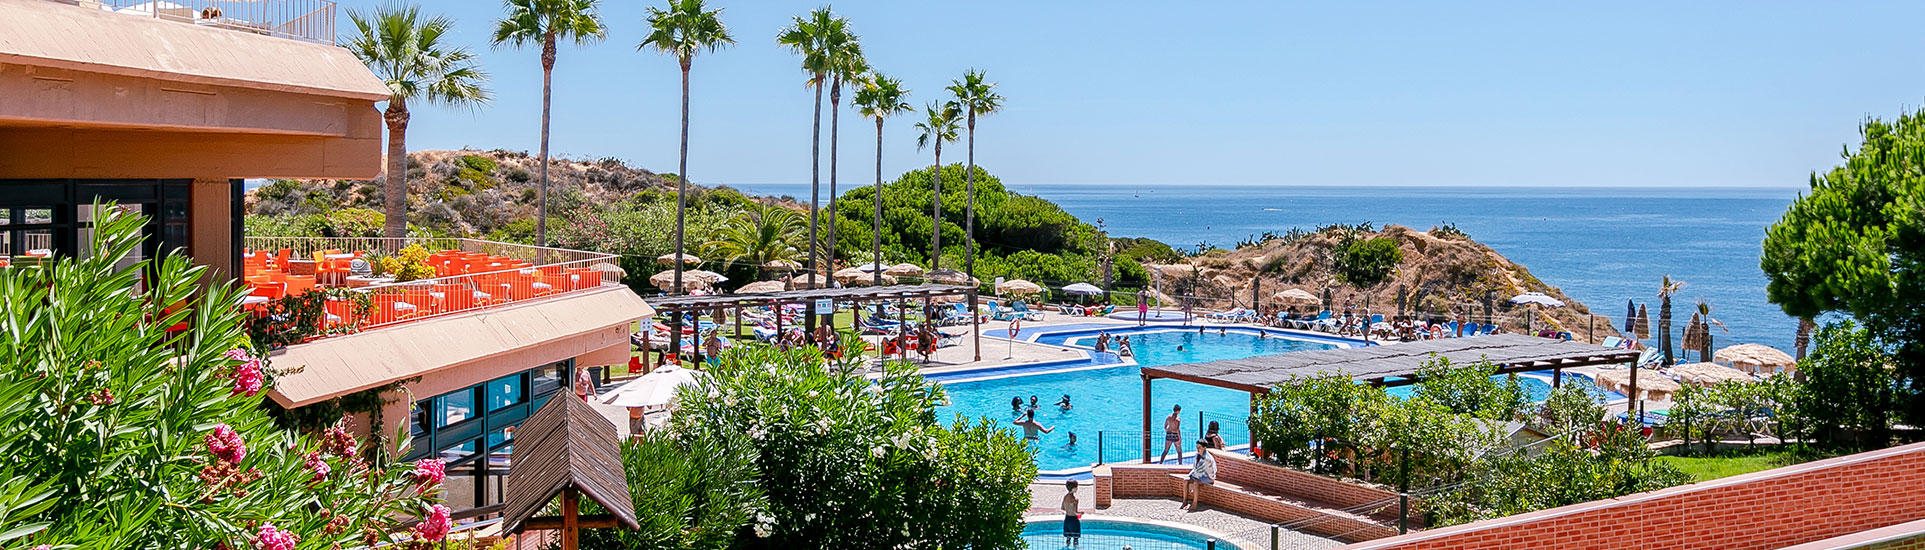 tourhub | Just Go Holidays | Auramar Hotel, Algarve, Portugal – All Inclusive – 28 nights 